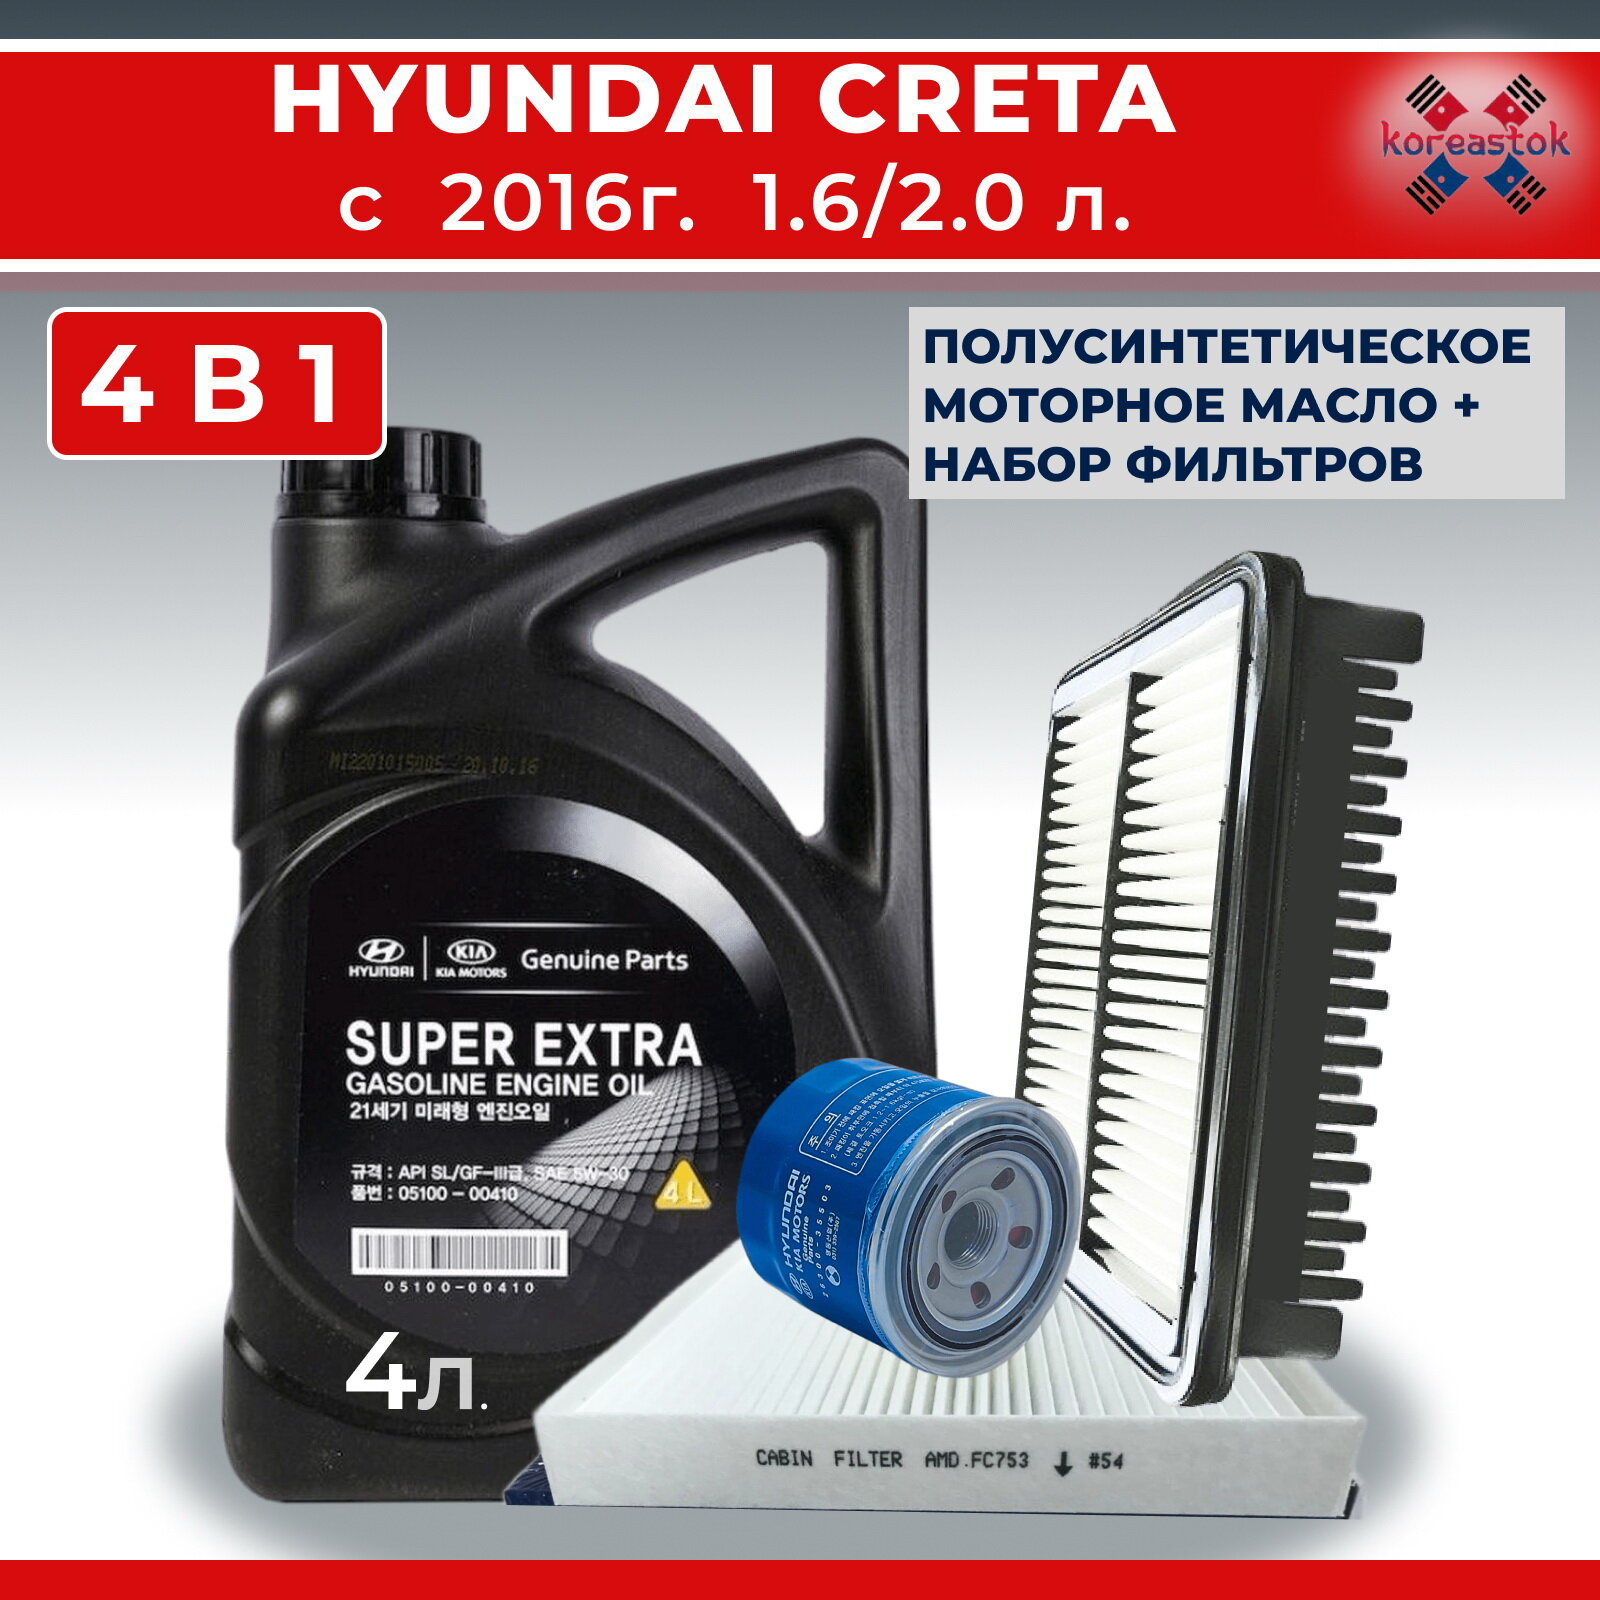 Набор фильтров (масляный, воздушный, салонный) для Hyundai Creta 1.6л с 2016г .+моторное масло Super Extra 5W-30, 4л.